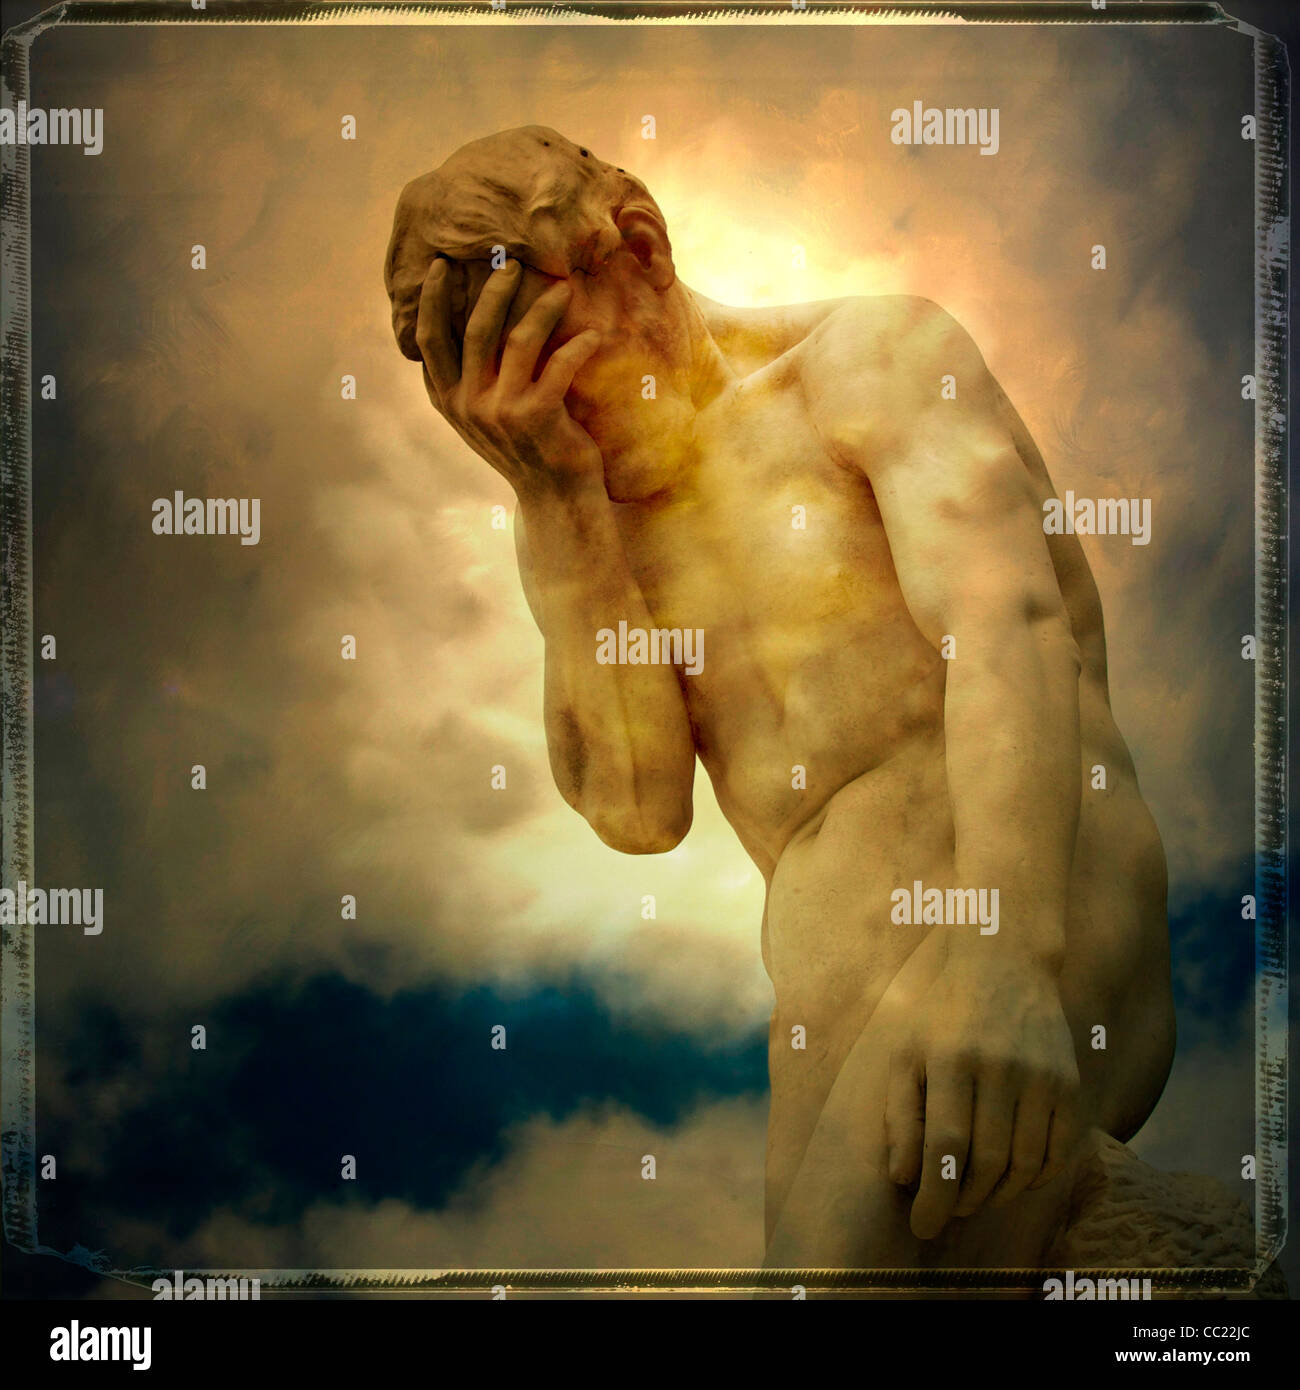 Statue von Mensch zu Gesicht - Kummer, Traurigkeit, psychische Gesundheit oder Verzweiflung Konzept Stockfoto